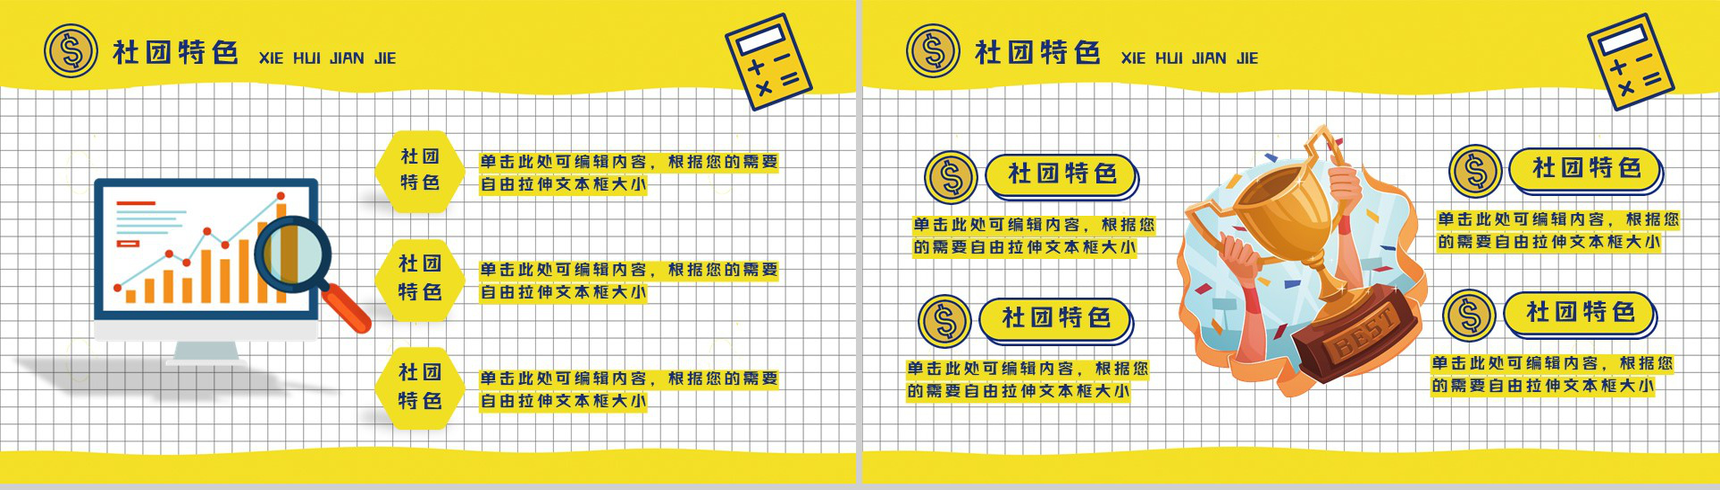 黄色扁平化卡通商务社团招新计划活动方案招聘PPT模板-6